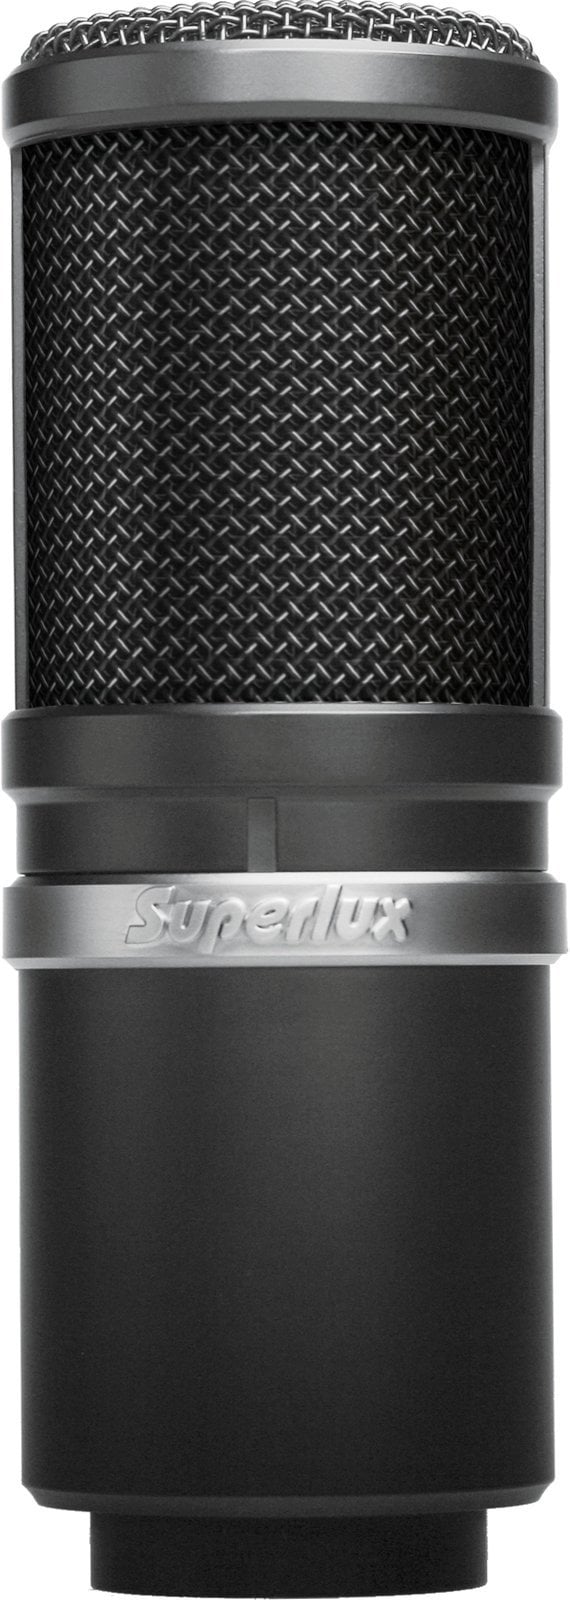 Microfon cu condensator pentru studio Superlux E205 Microfon cu condensator pentru studio